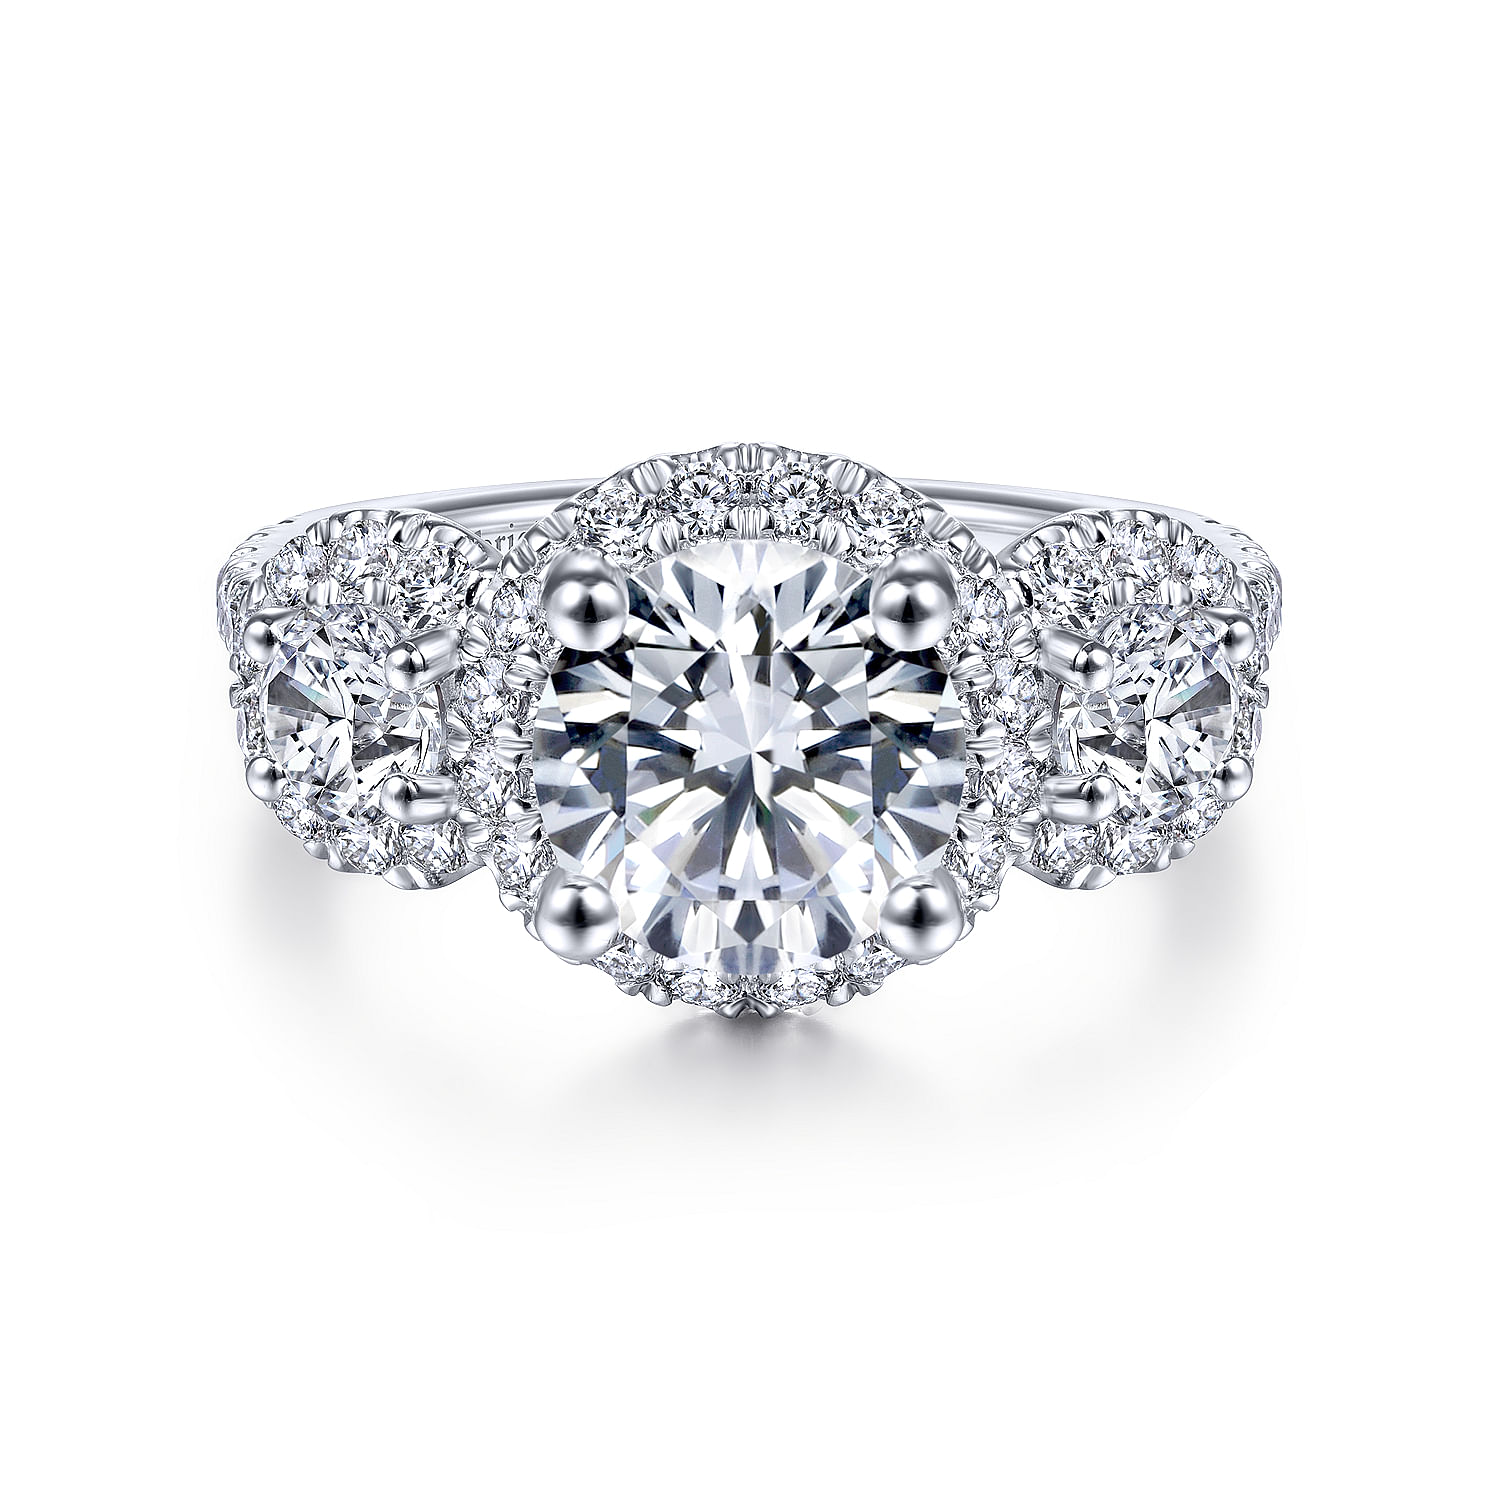 France - 14K White Gold Round 3 Stone Halo Diamond Engagement Ring